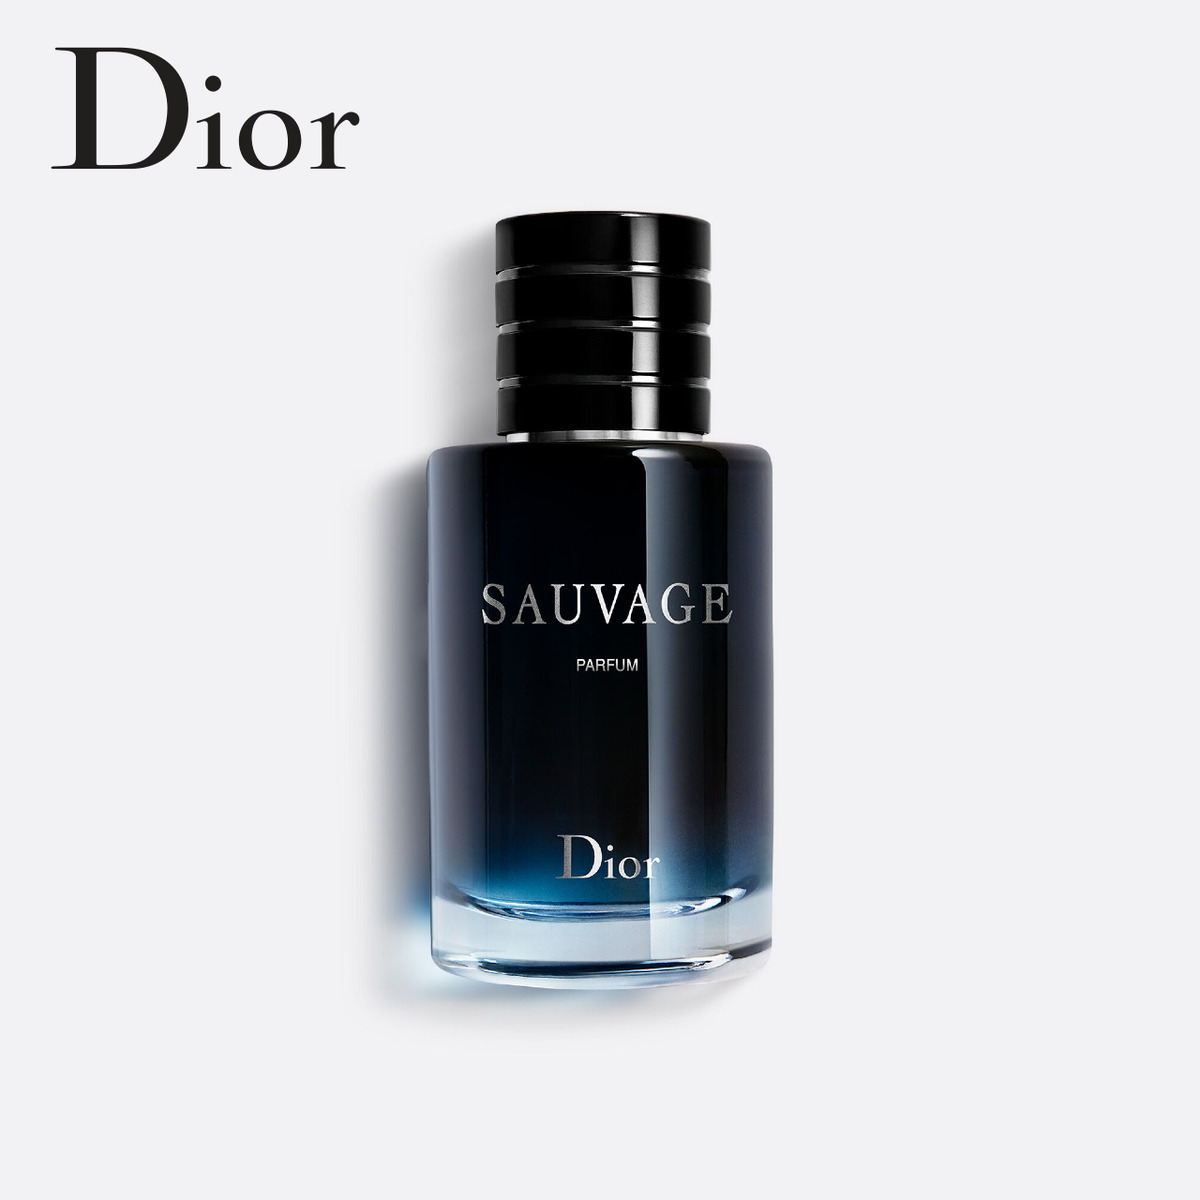 格安激安 評価 洗練された気高さが際立つ個性とが共鳴するフレグランス Dior ディオール ソヴァージュ パルファン Sauvage Parfum 60ml iis.uj.ac.za iis.uj.ac.za